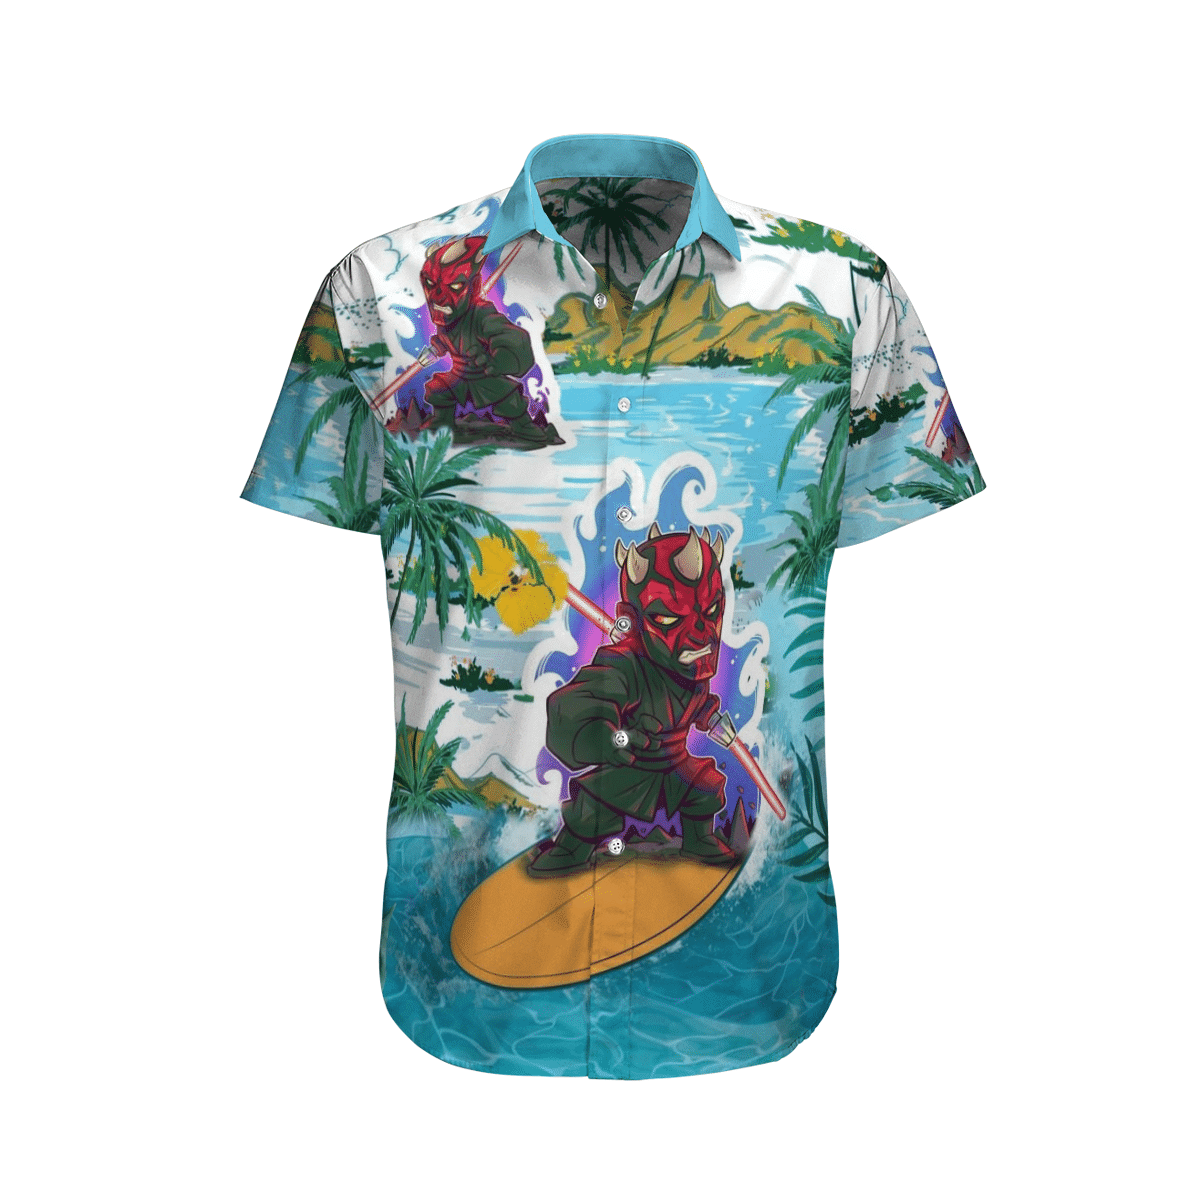 Darth Maul surfing Hawaiian shirt 2